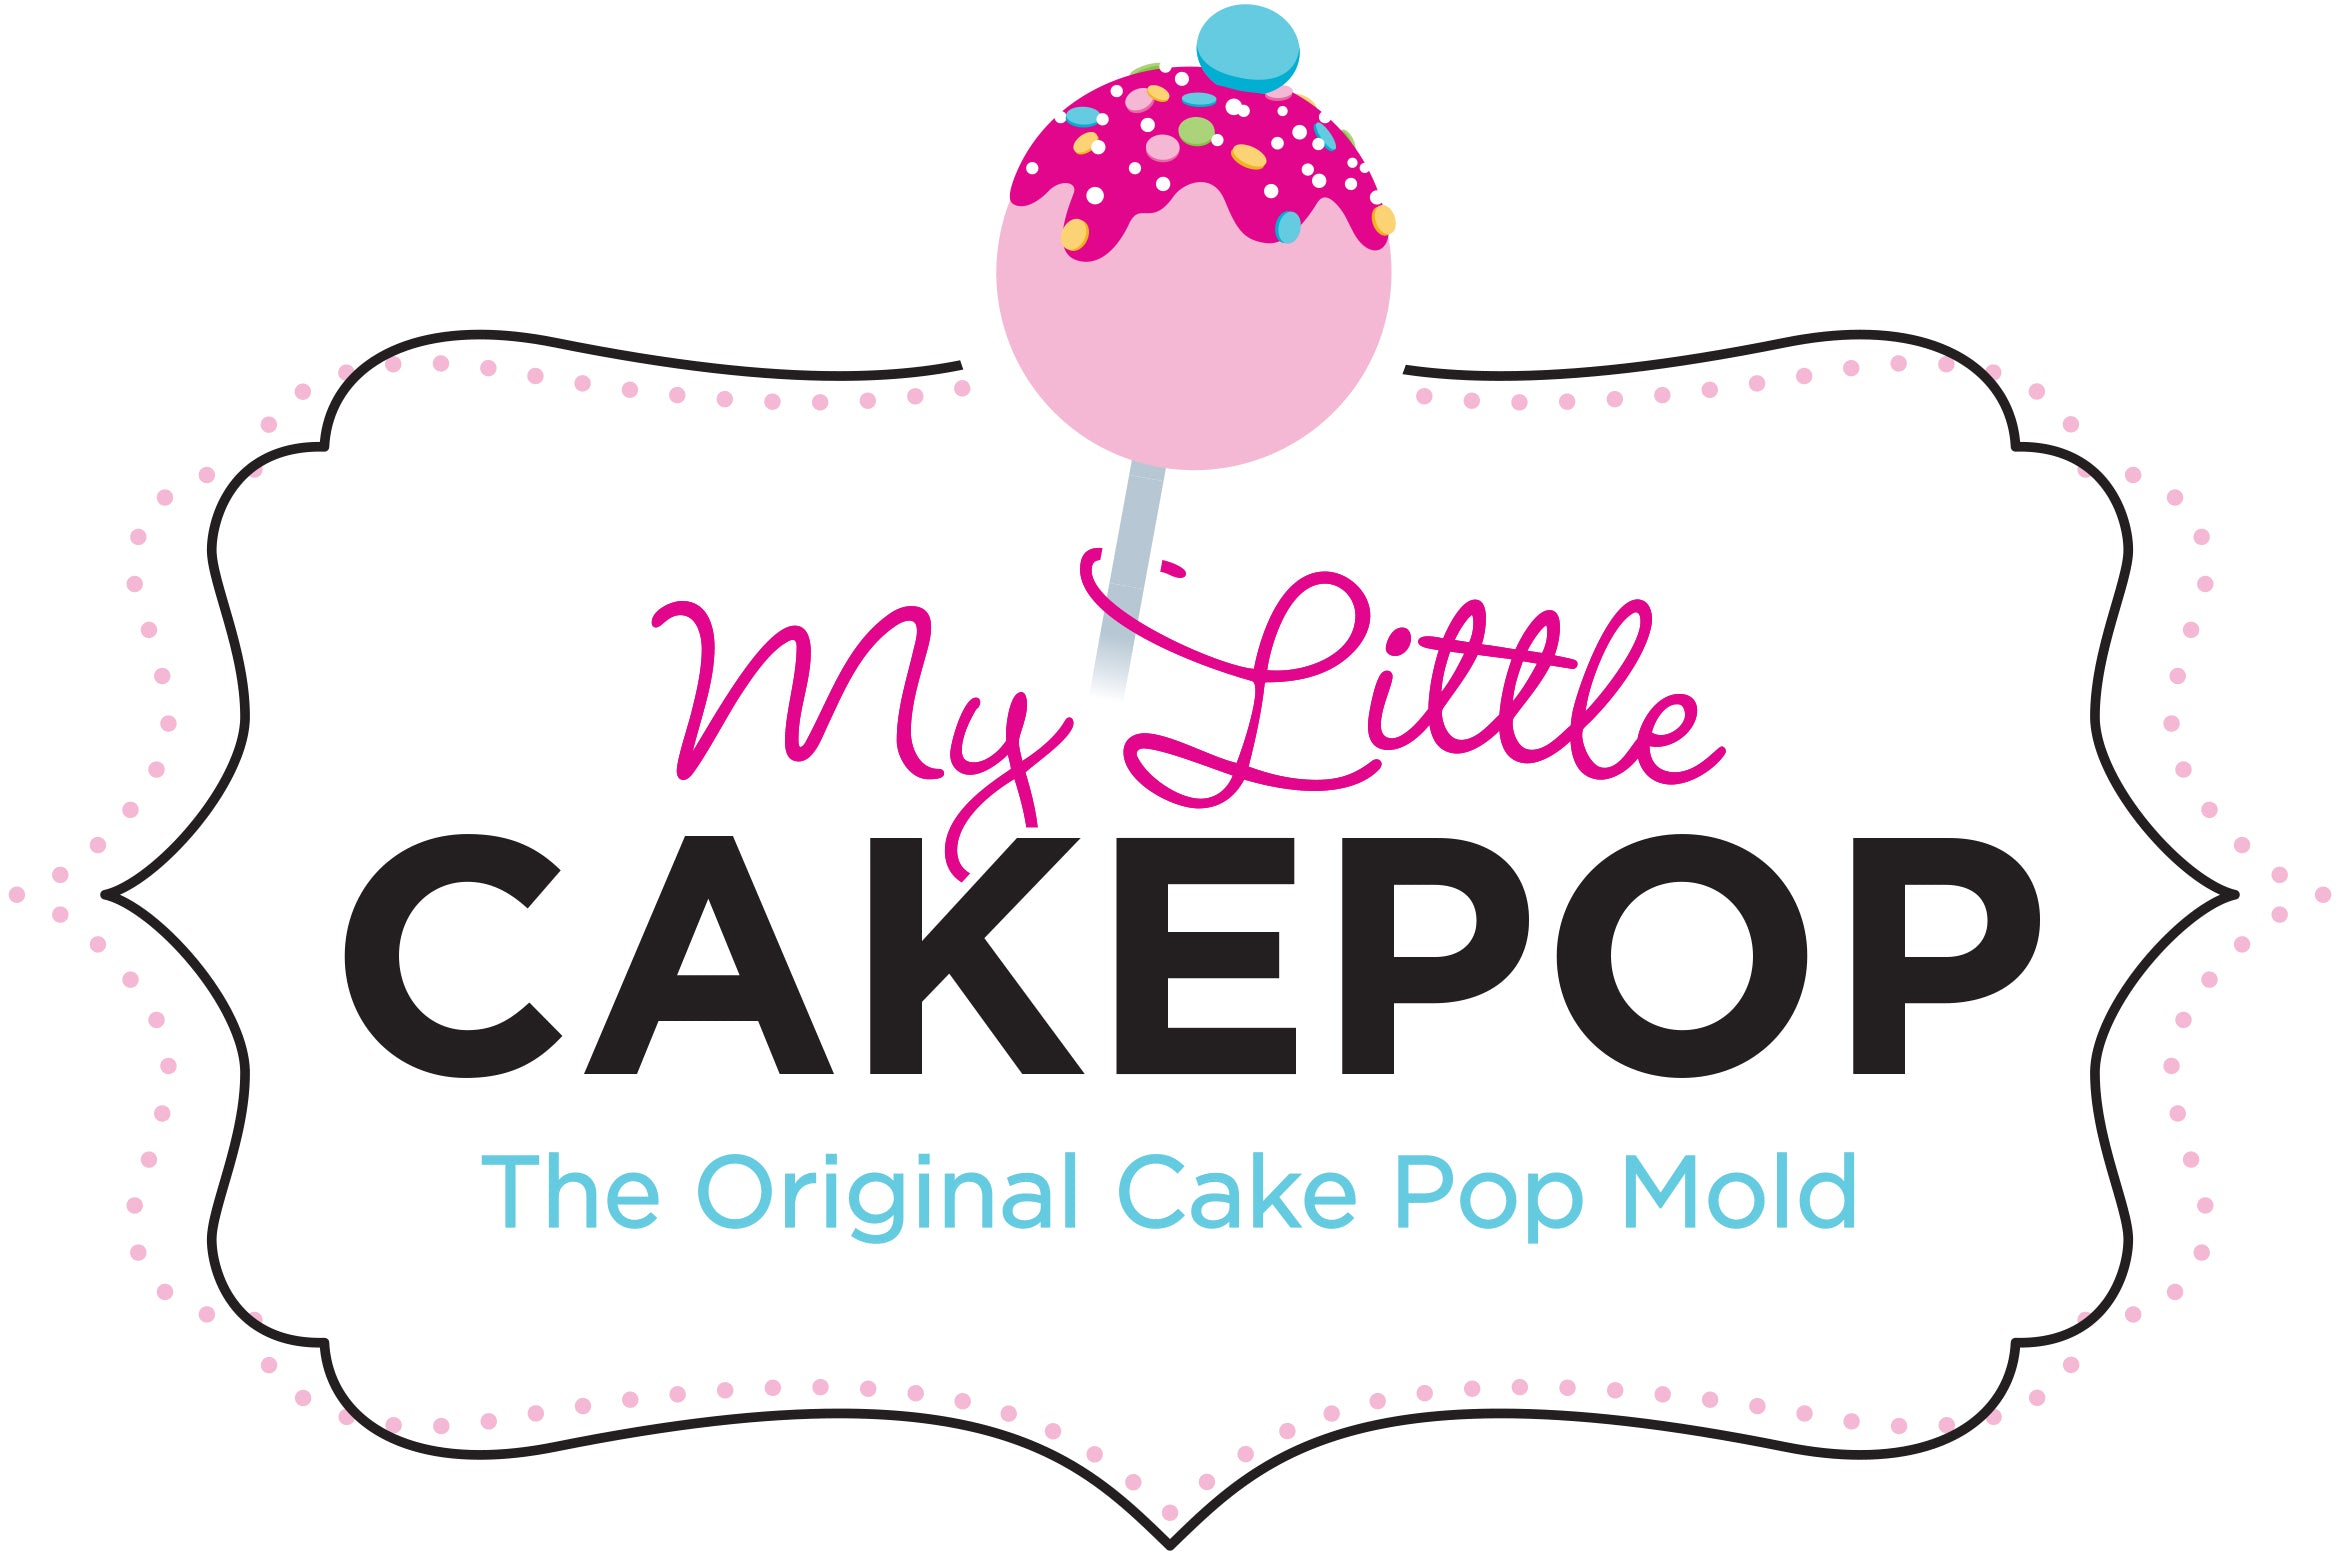 Planches à Cake Pop Or (50pcs) – My Little Cakepop, llc